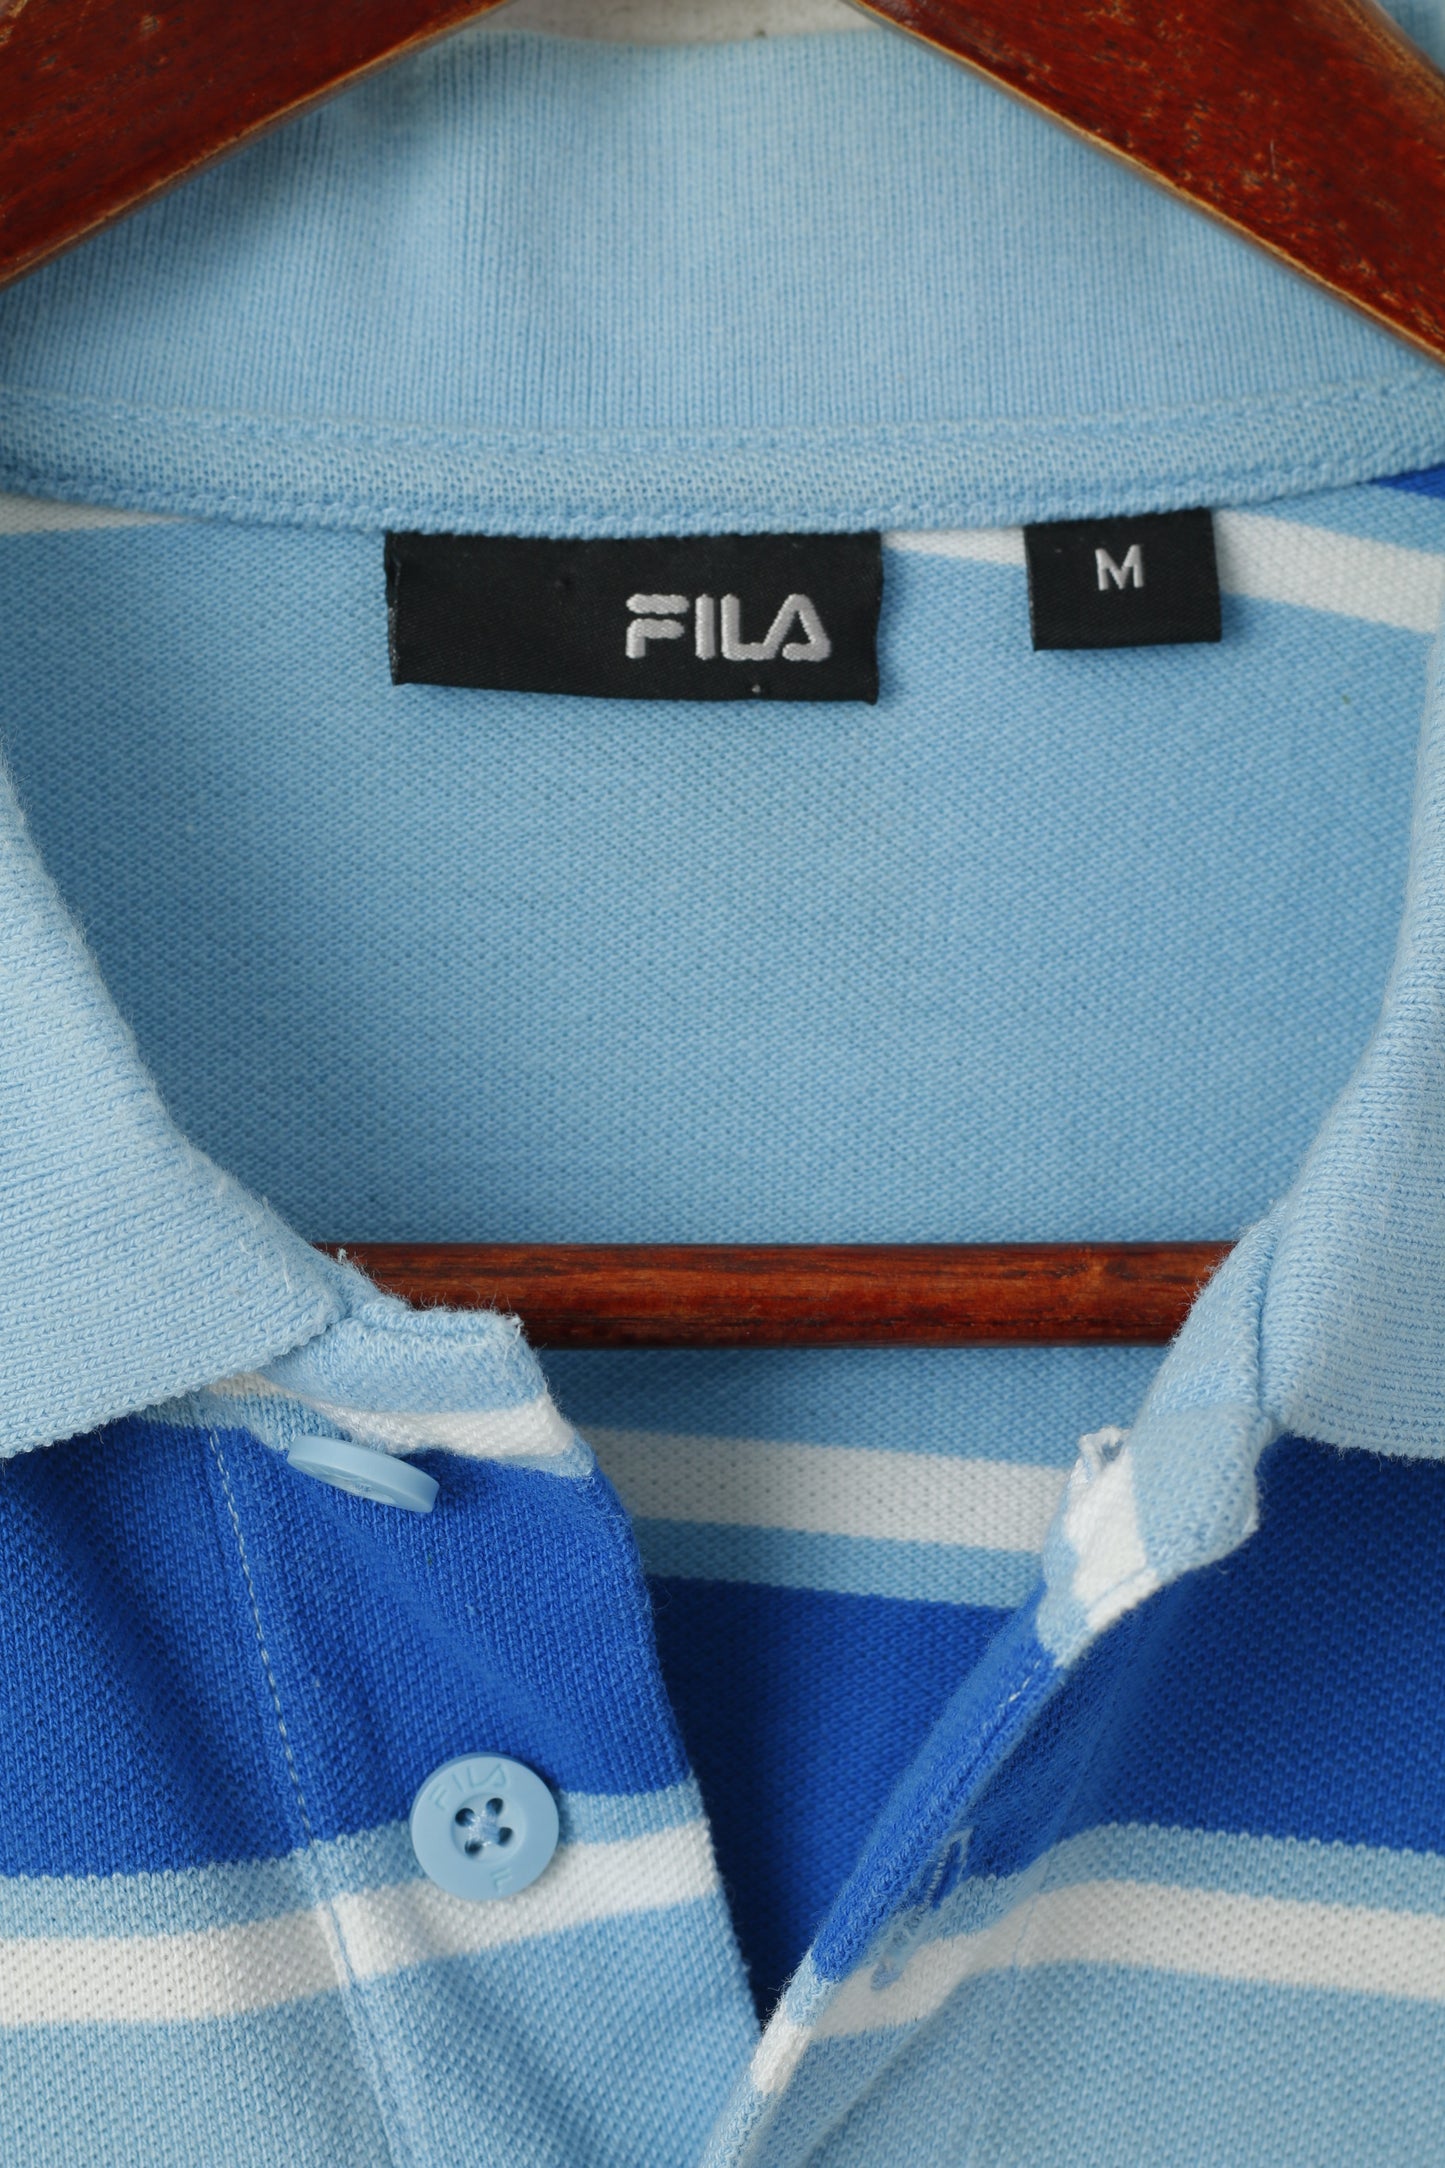 FILA Homme M Polo Bleu 100% Coton Rayé Coupe Slim Boutons Détaillés Haut Classique